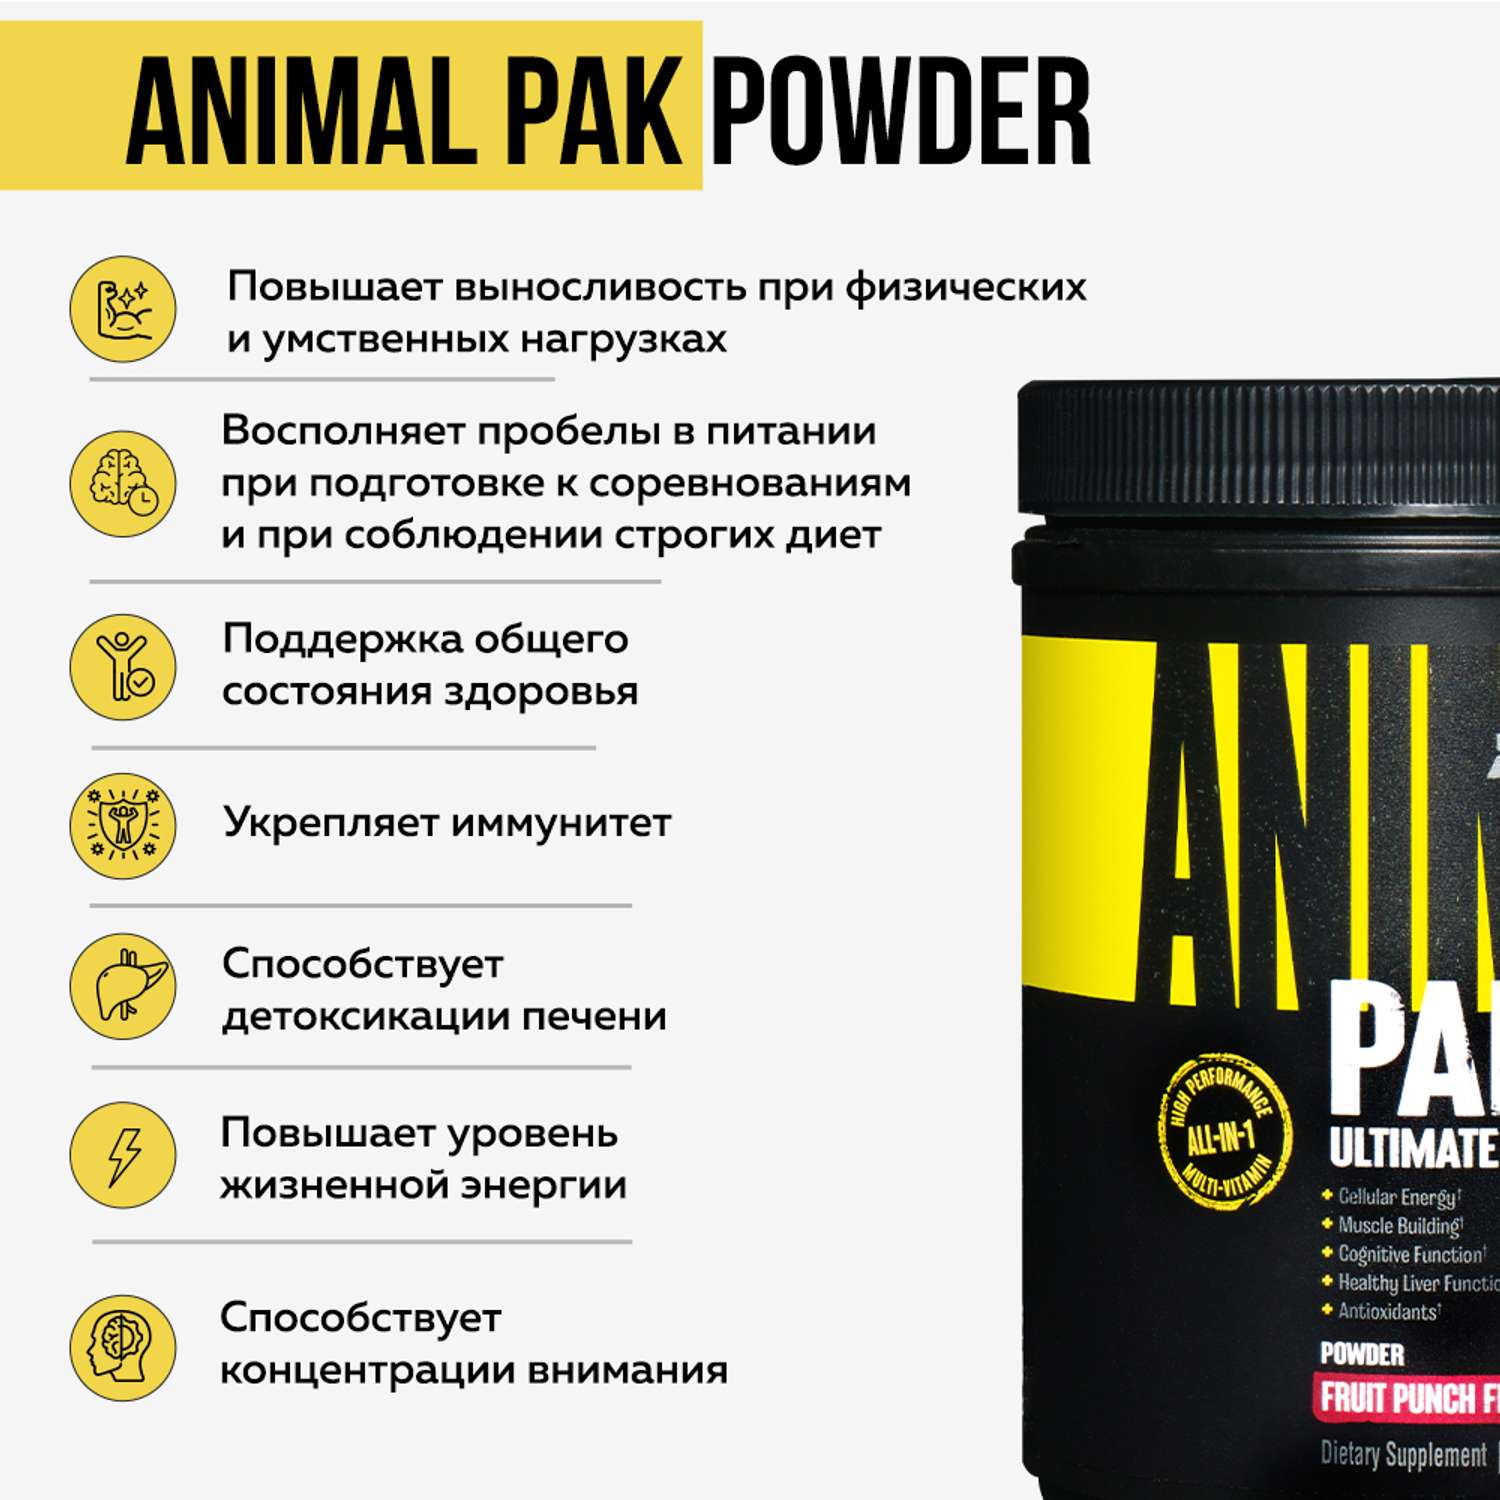 Комплекс витаминов и минералов Animal Pak Powder Фруктовый пунш 417 г - фото 2